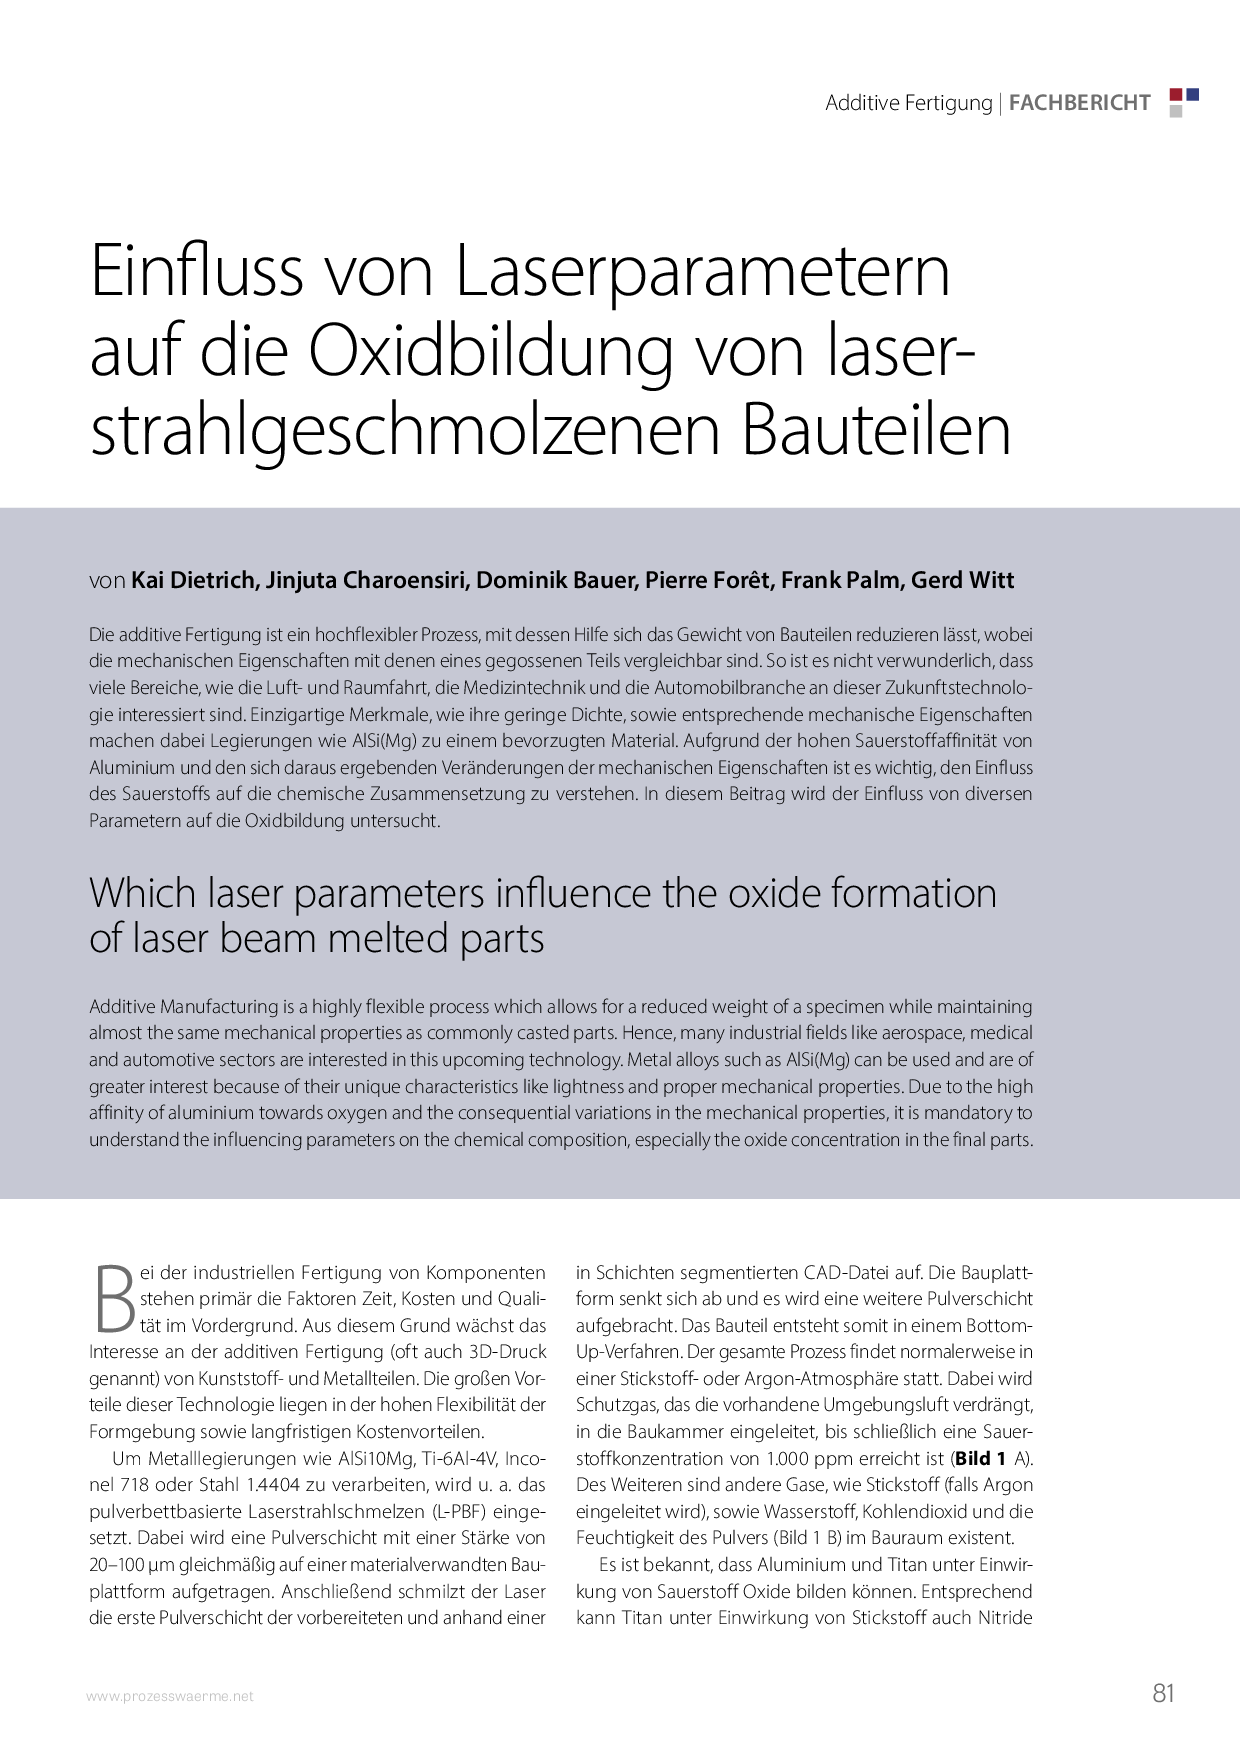 Einfluss von Laserparametern auf die Oxidbildung von laserstrahlgeschmolzenen Bauteilen